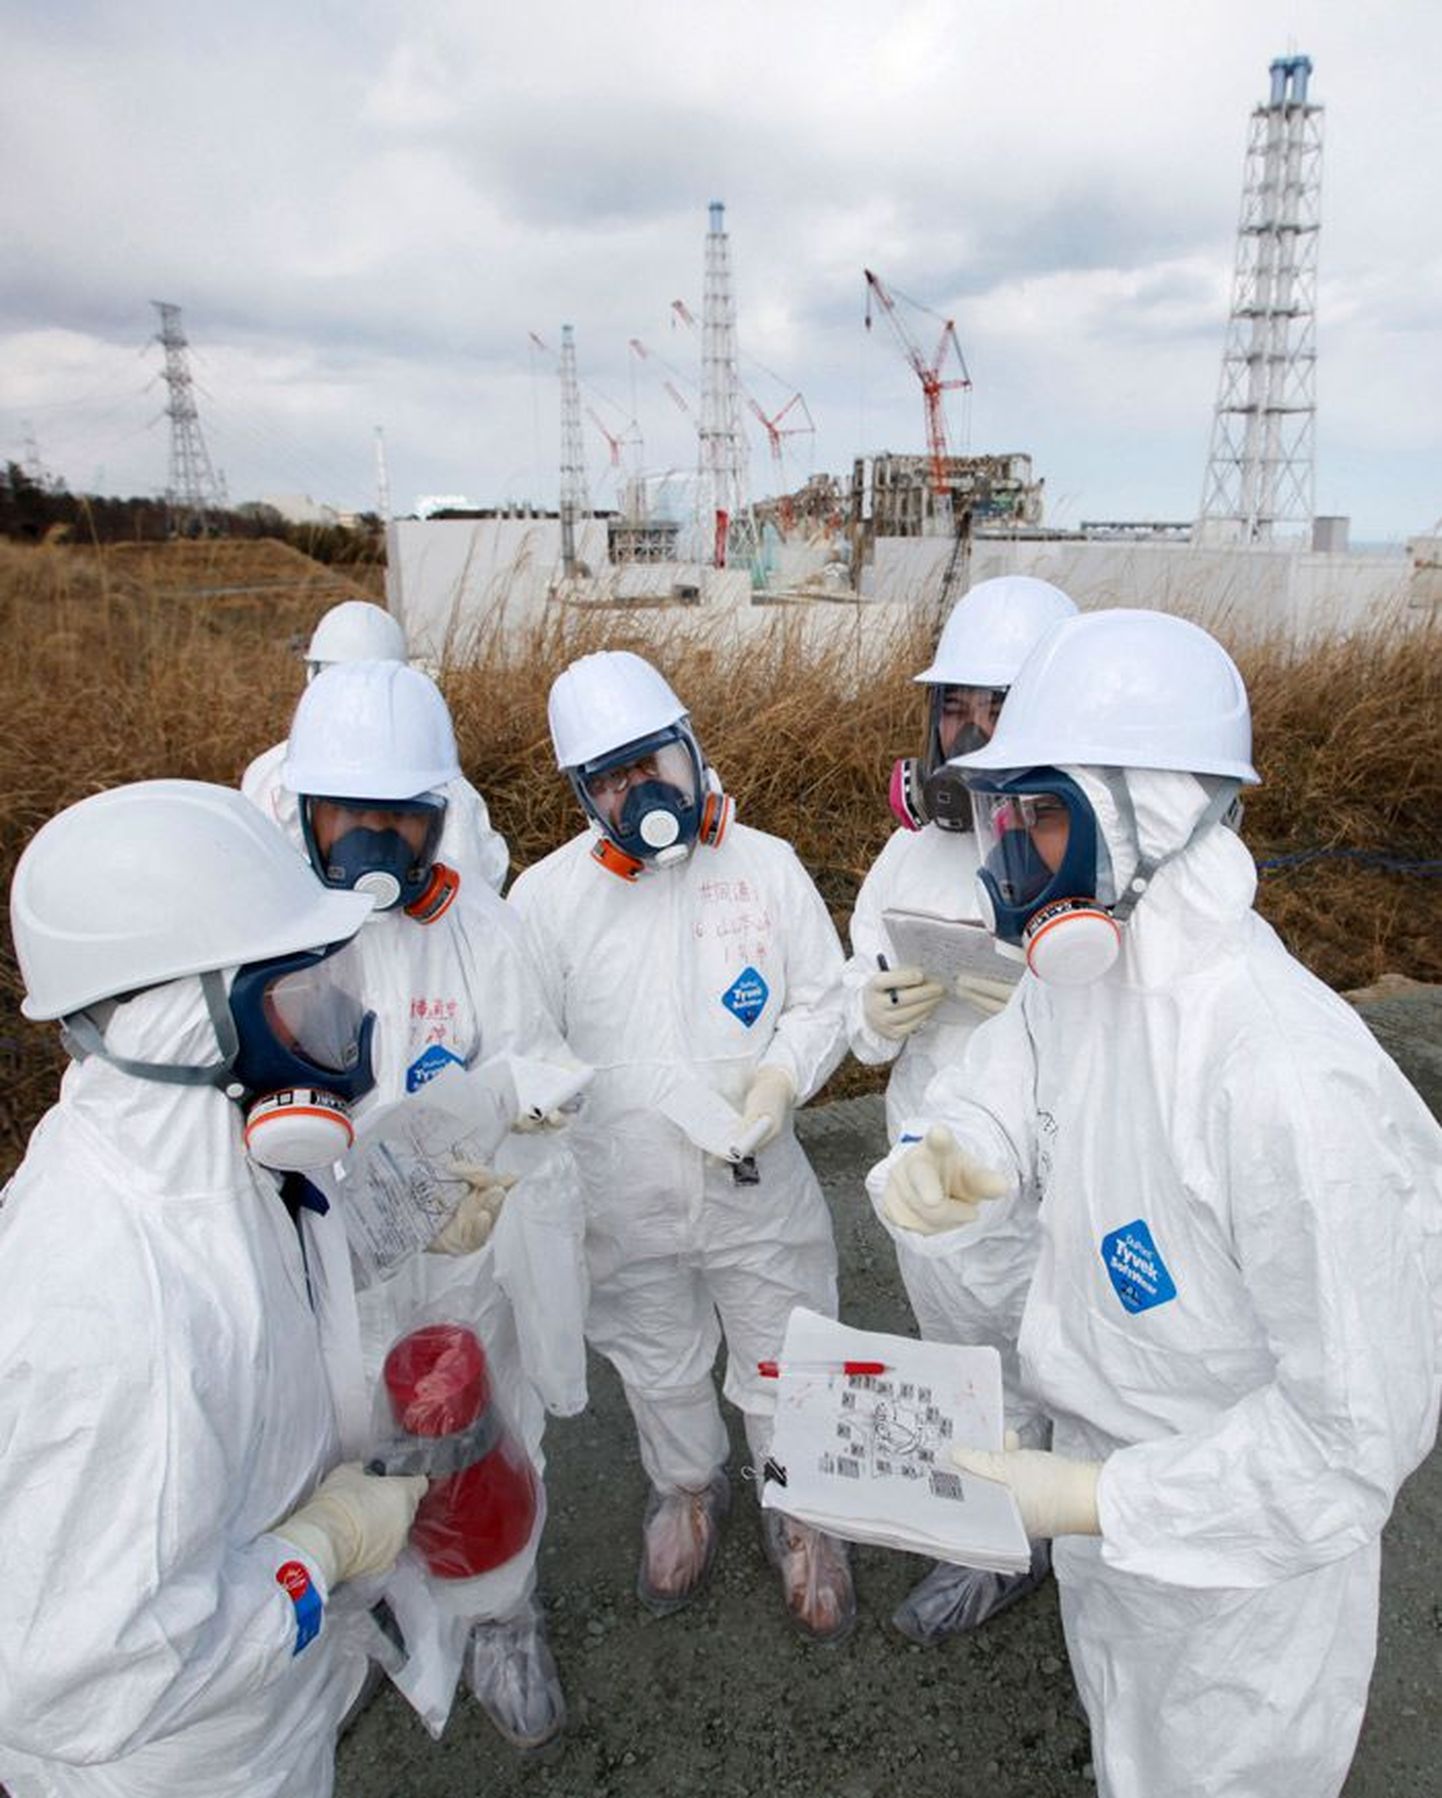 Ajakirjanikud, kes lubati lõppeval nädalal Fukushima Daiichi tuumajaama juurde.